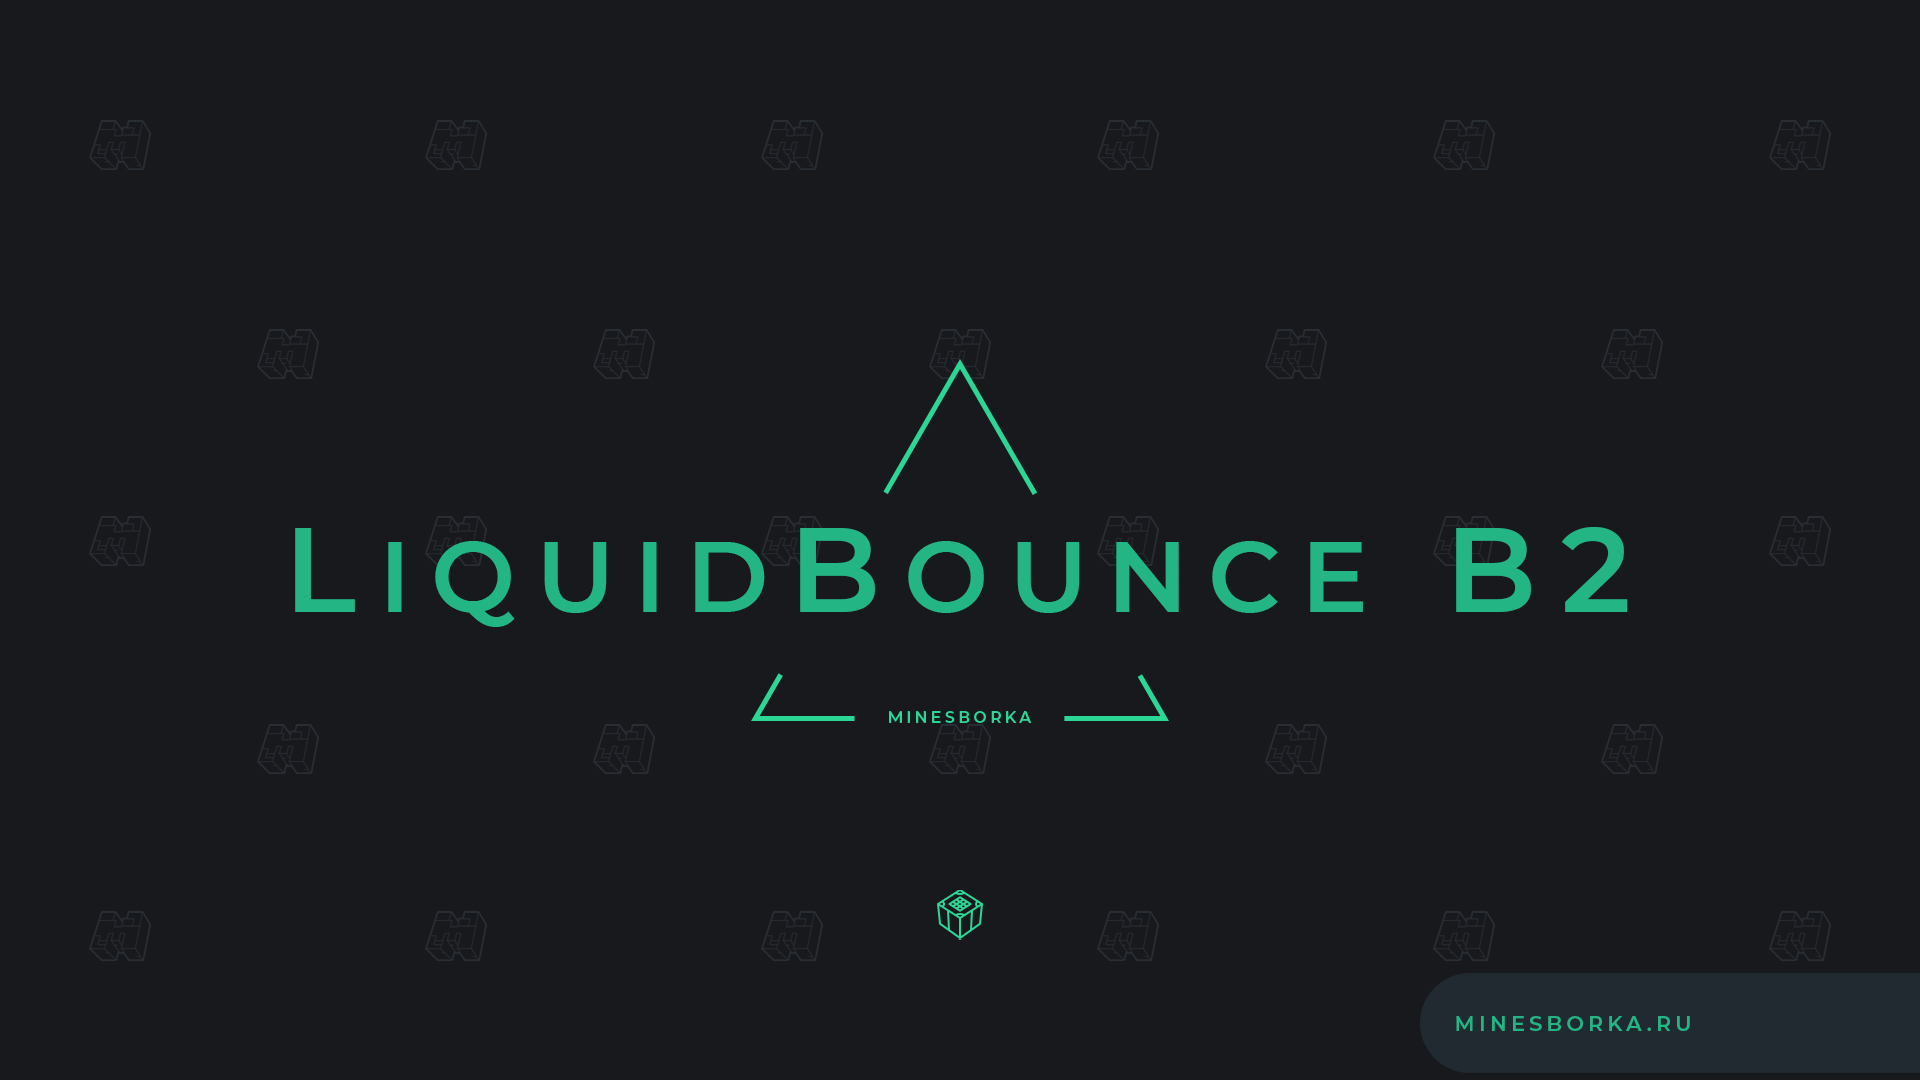 Скачать супер чит - LiquidBounce b2 | Чит для Minecraft 1.12.2 | Полет, киллаур | Fly, killaura